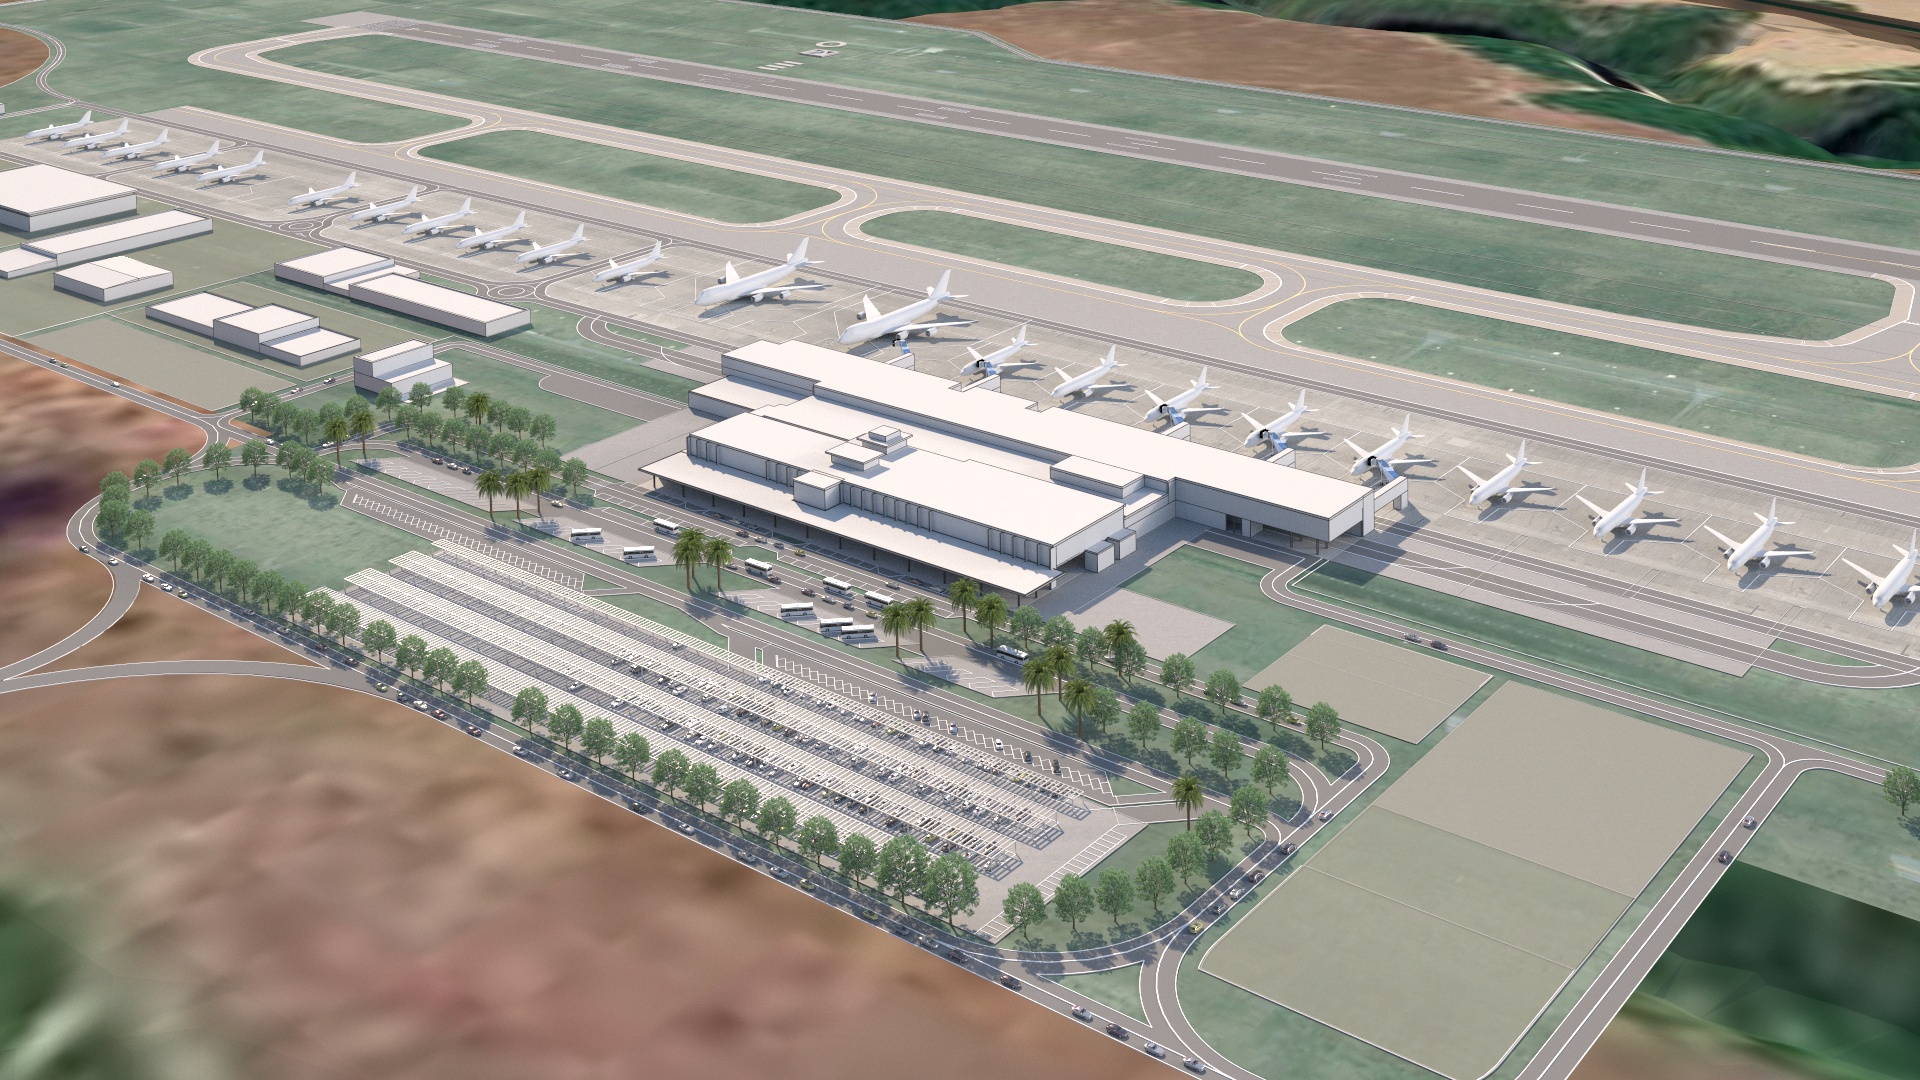 Moderno Aeroporto Internacional será construído na região de Porto Seguro